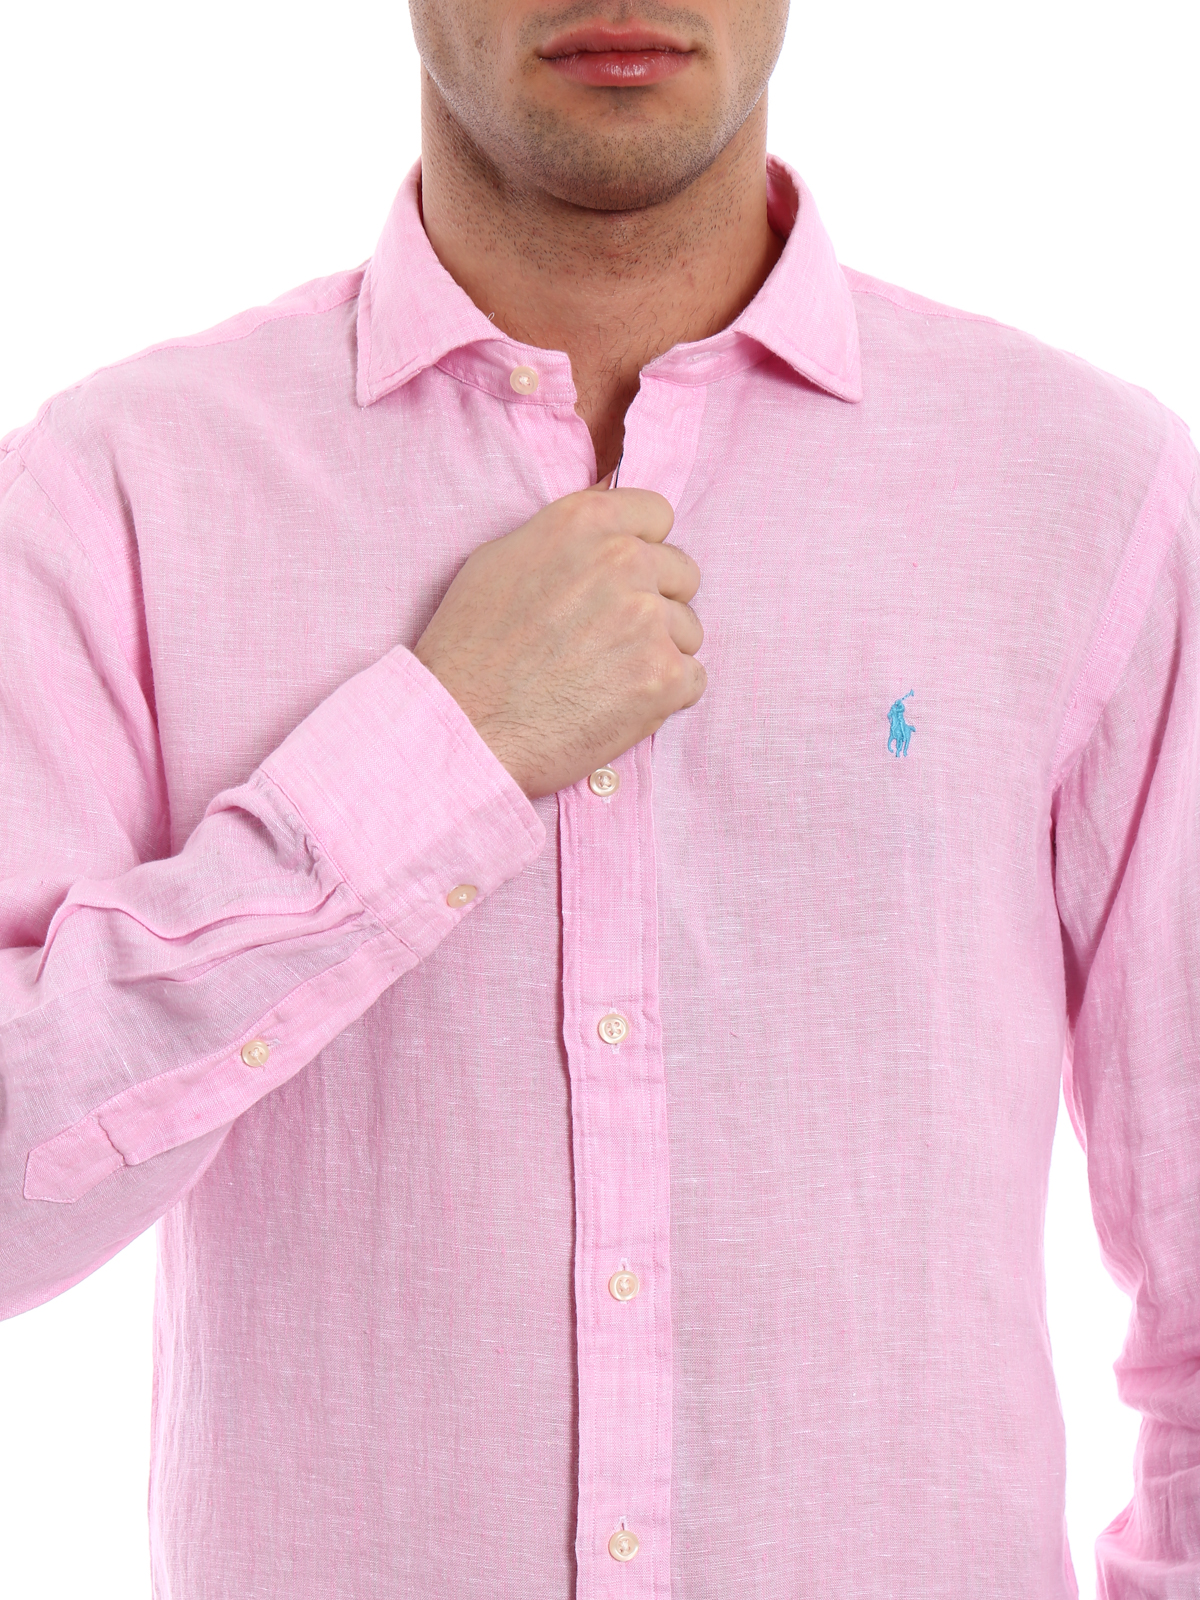 Shirts Polo Ralph Lauren - Pure linen logo shirt - 710695930002